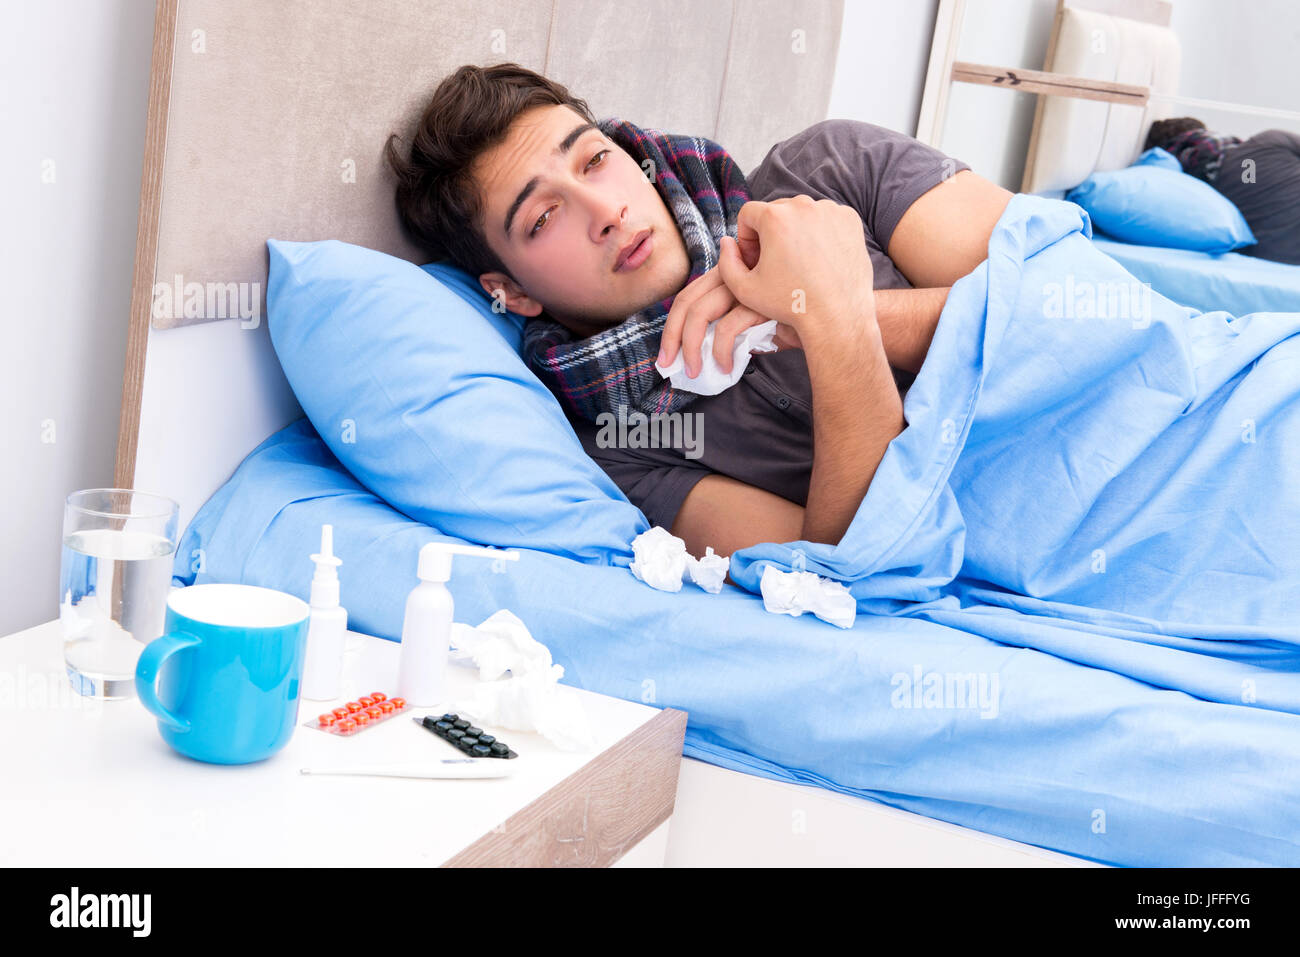 Homme malade avec la grippe couché dans le lit Photo Stock - Alamy